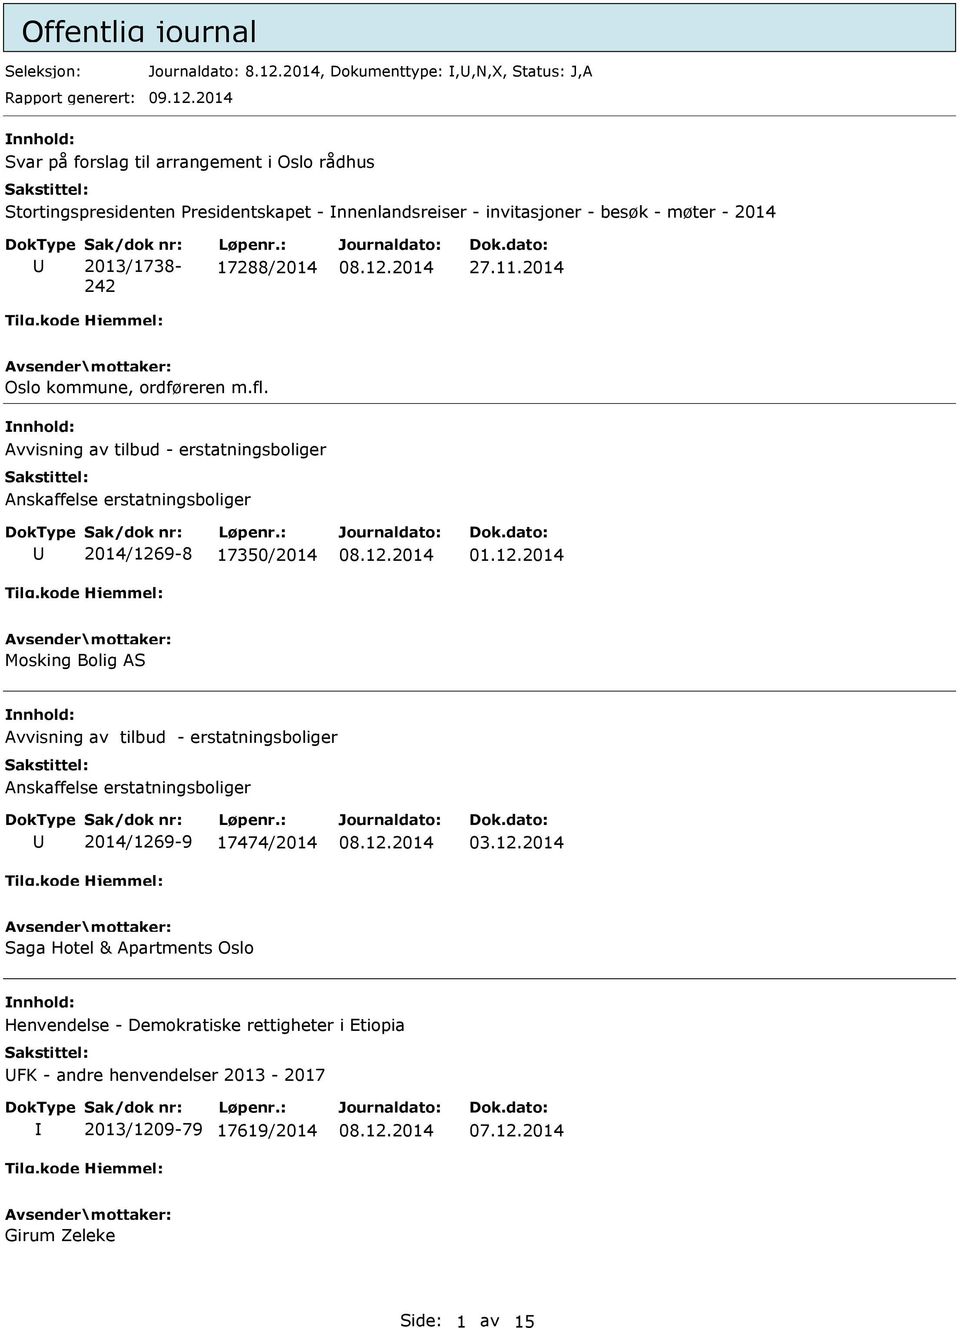 2014 Svar på forslag til arrangement i Oslo rådhus Stortingspresidenten Presidentskapet - nnenlandsreiser - invitasjoner - besøk - møter - 2014 2013/1738-242 17288/2014 27.11.